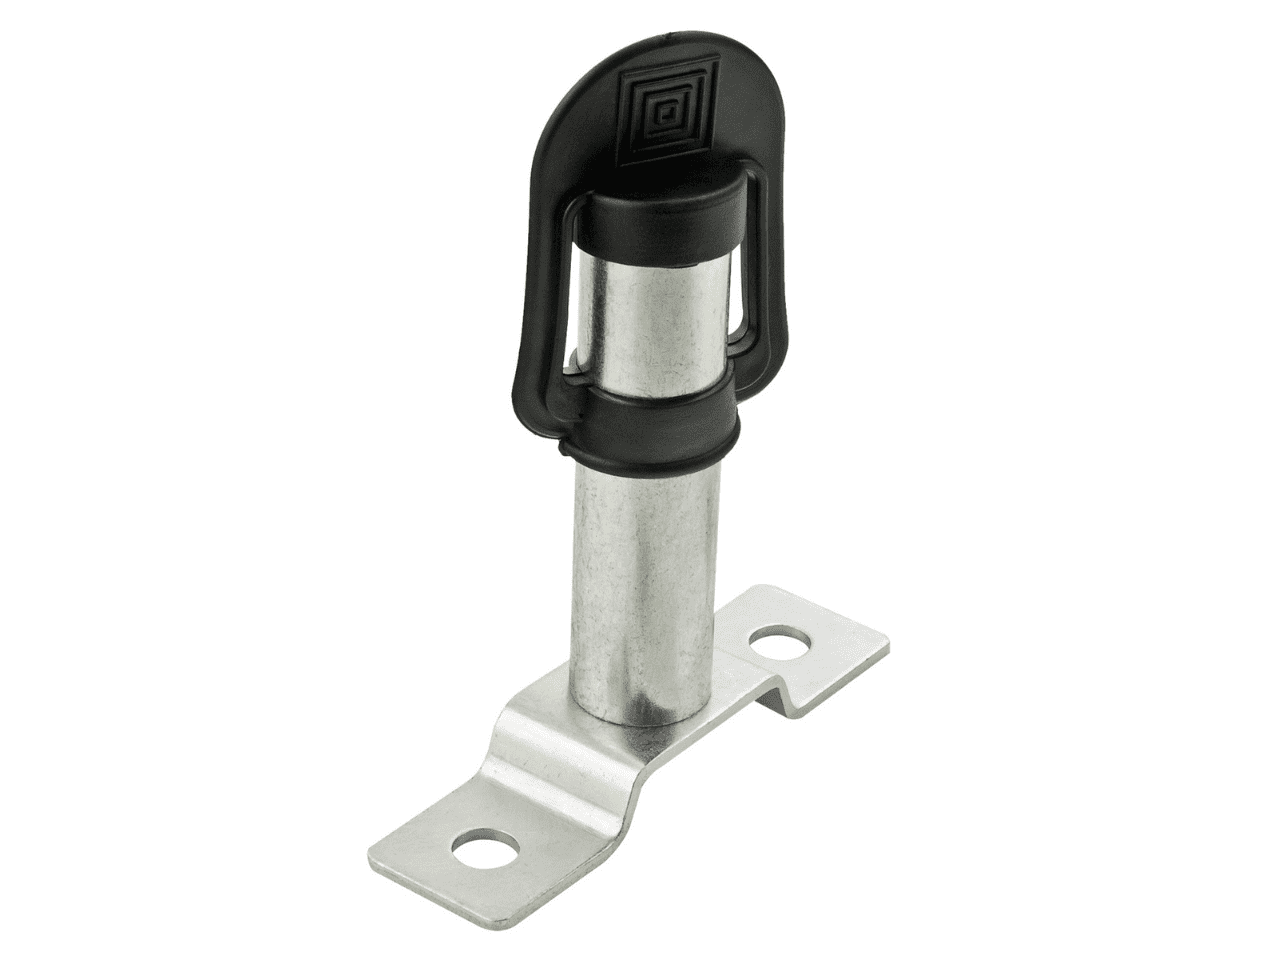 Pole Mount/Integral DIN Socket bolt down